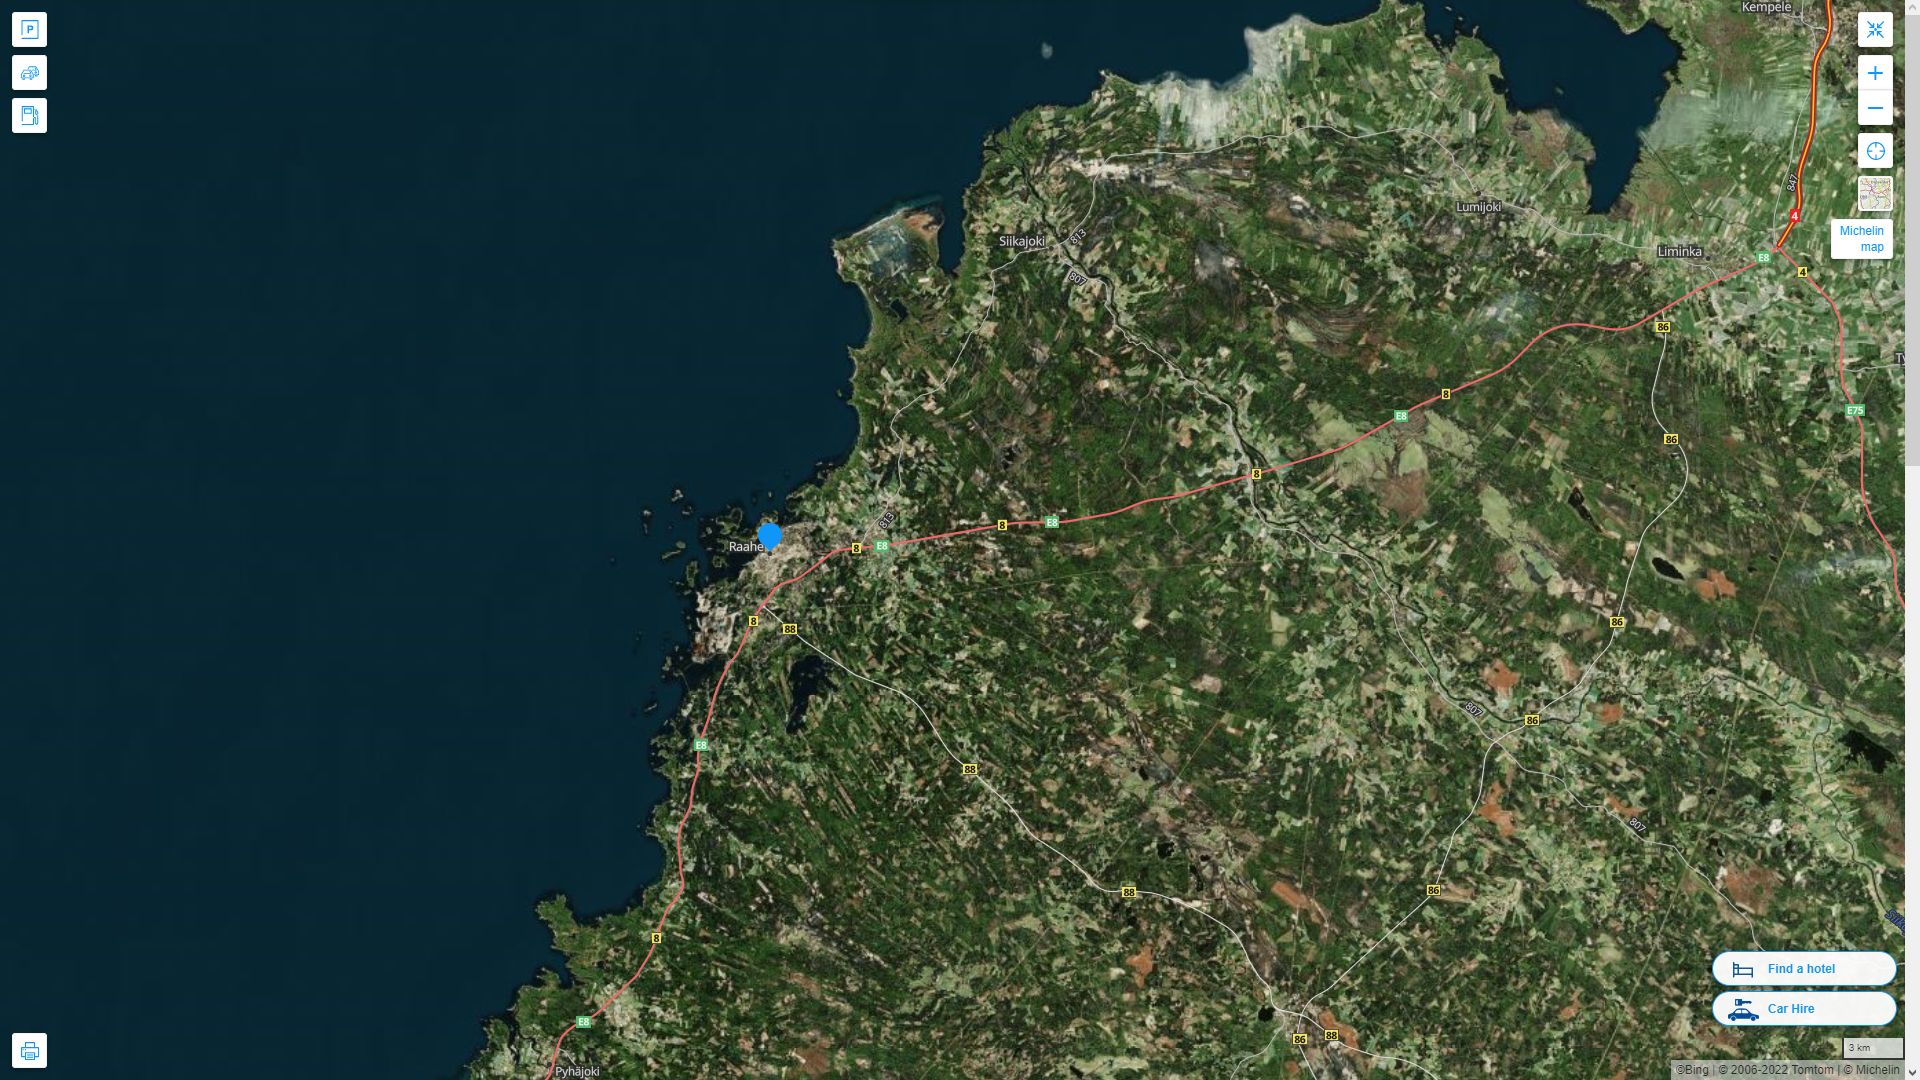 Raahe Finlande Autoroute et carte routiere avec vue satellite